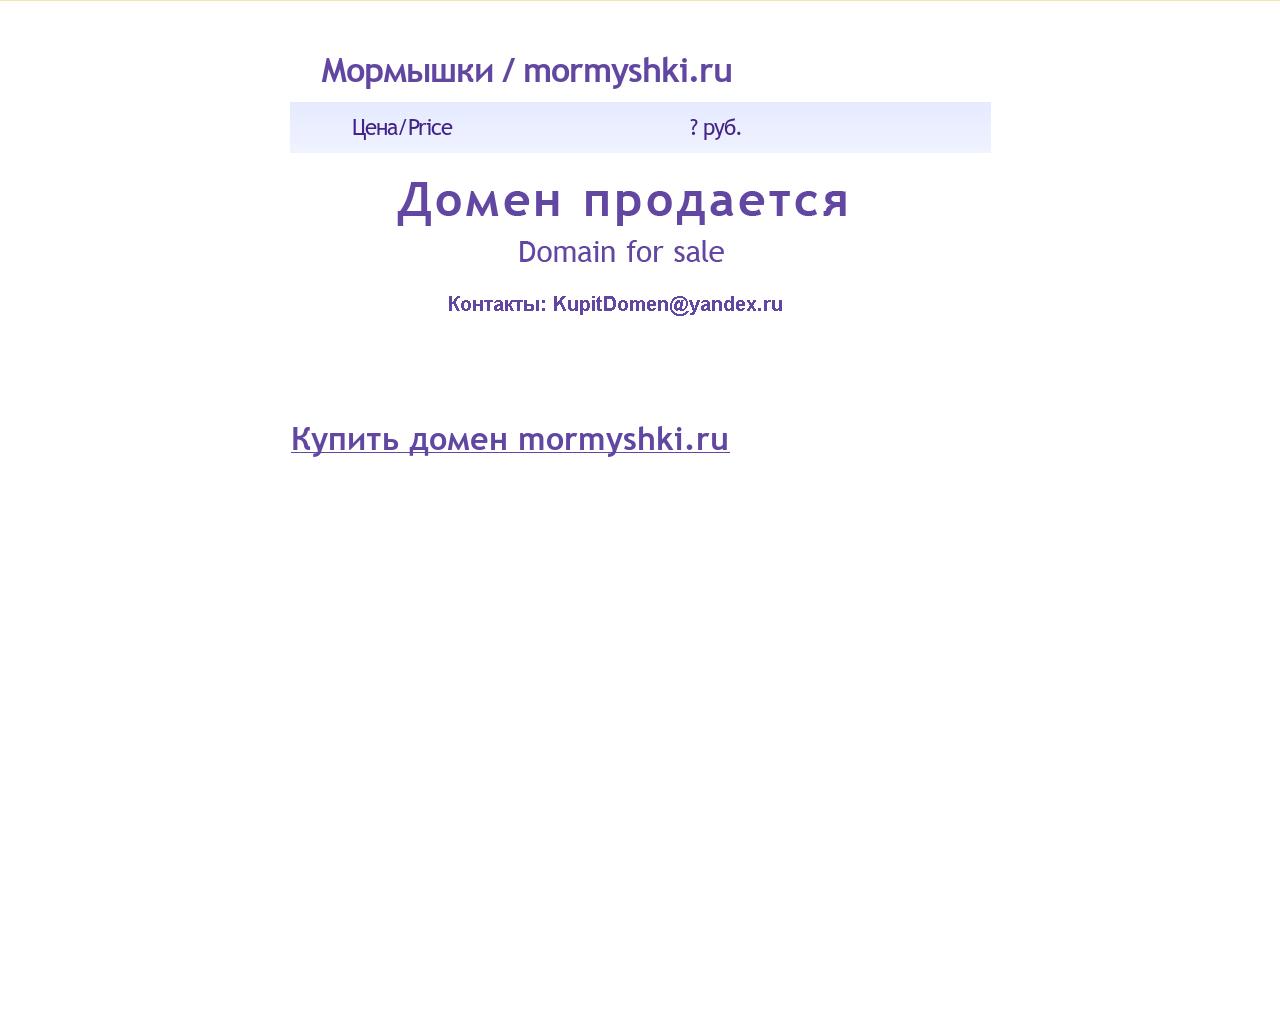 Изображение сайта mormyshki.ru в разрешении 1280x1024